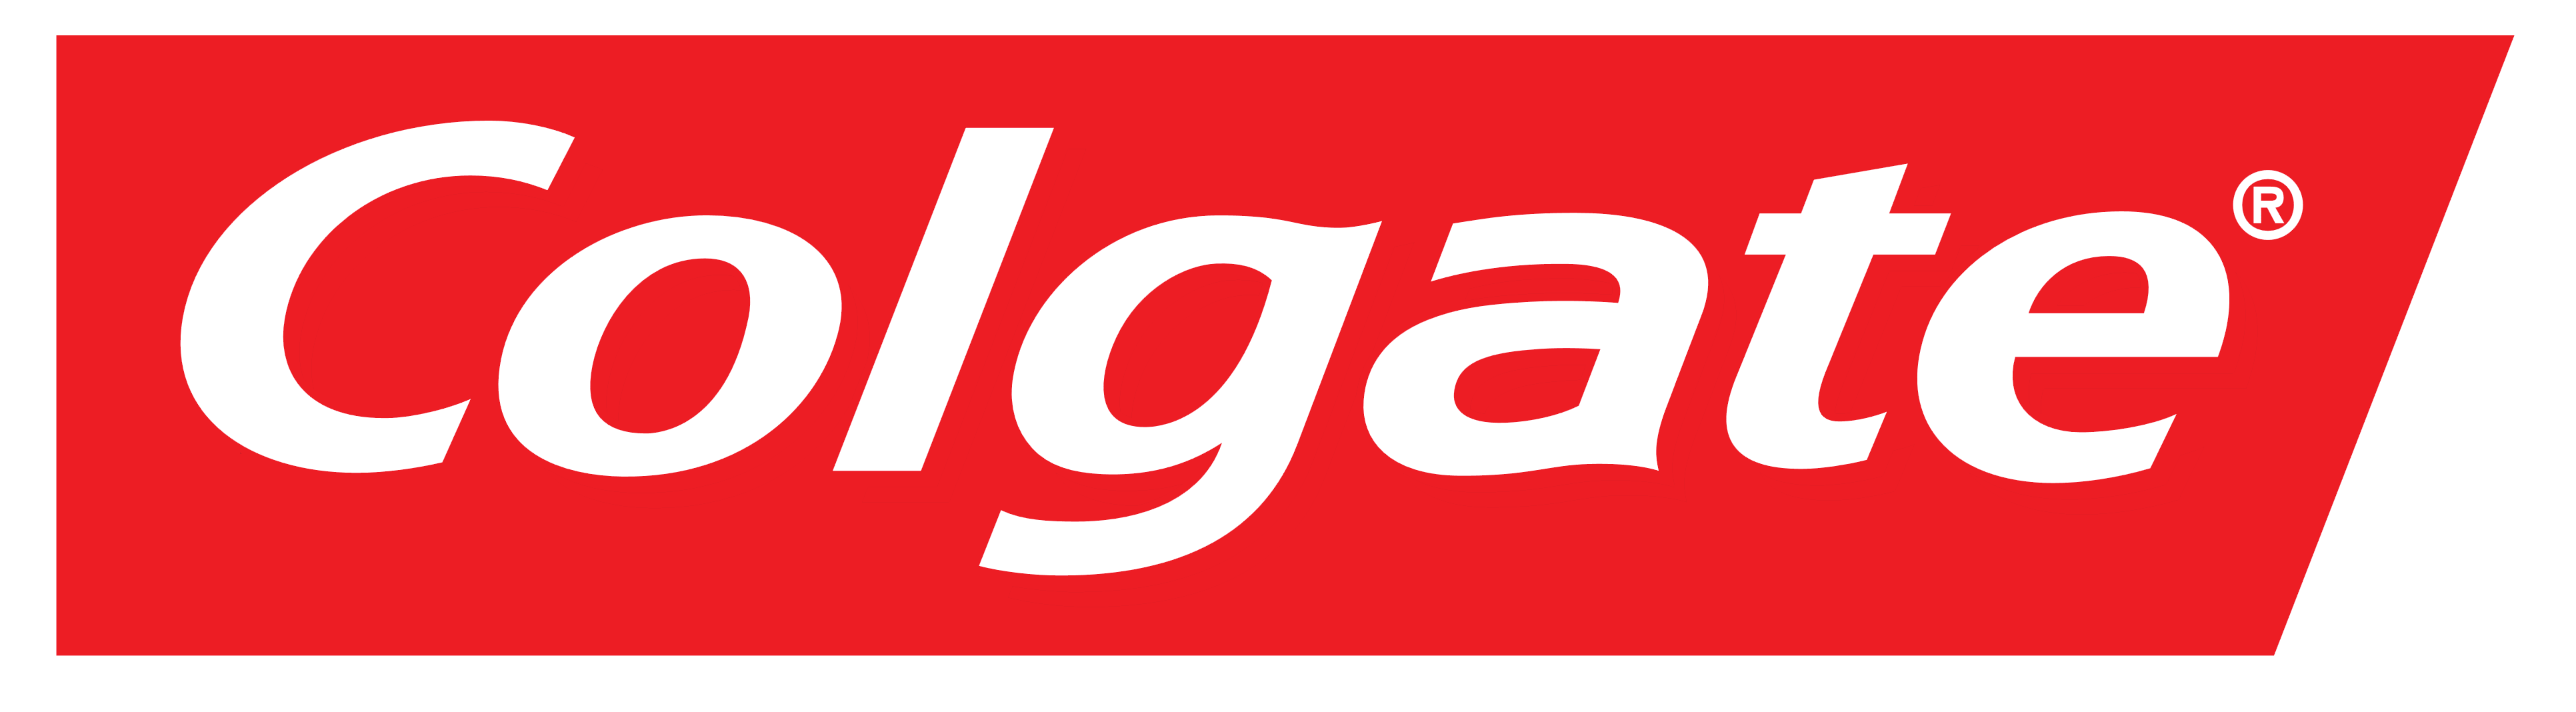 Colgate logo, logotype